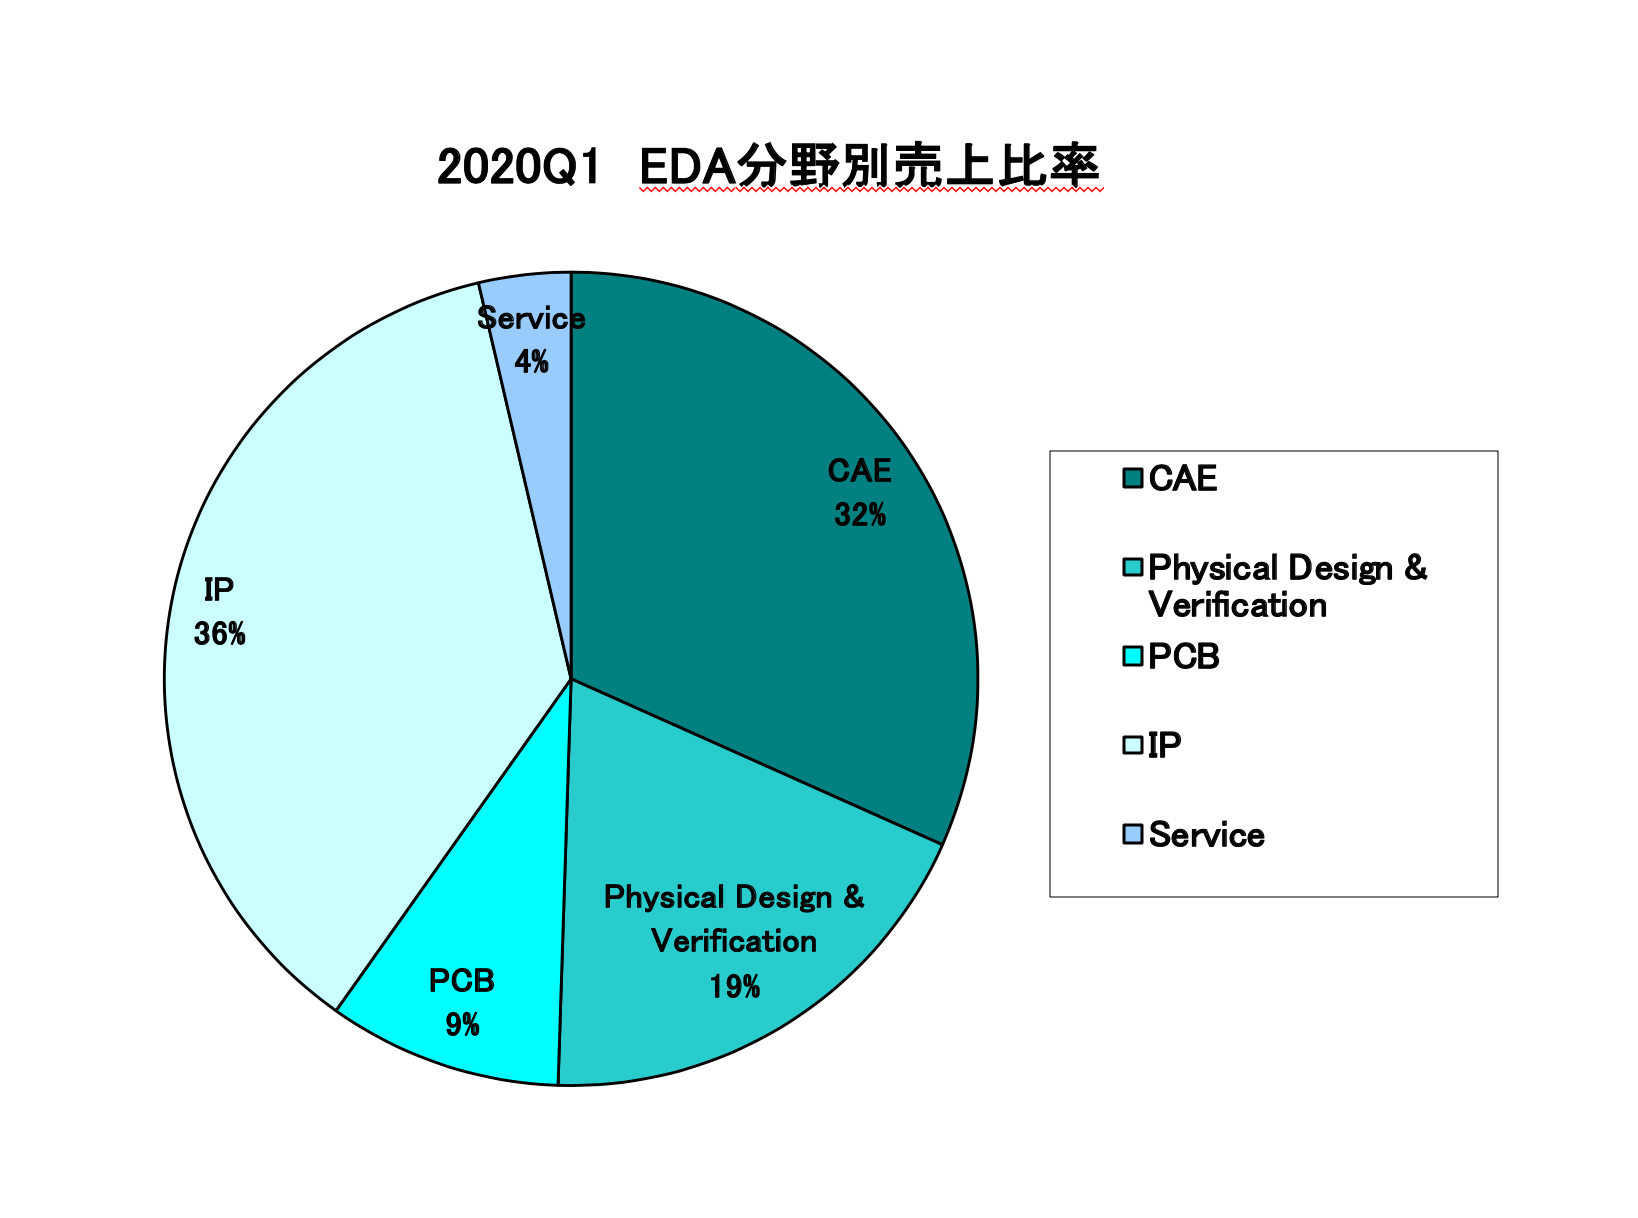 https://www.eda-express.com/%E3%82%B9%E3%82%AF%E3%83%AA%E3%83%BC%E3%83%B3%E3%82%B7%E3%83%A7%E3%83%83%E3%83%88%202020-07-14%2011.02.09.png